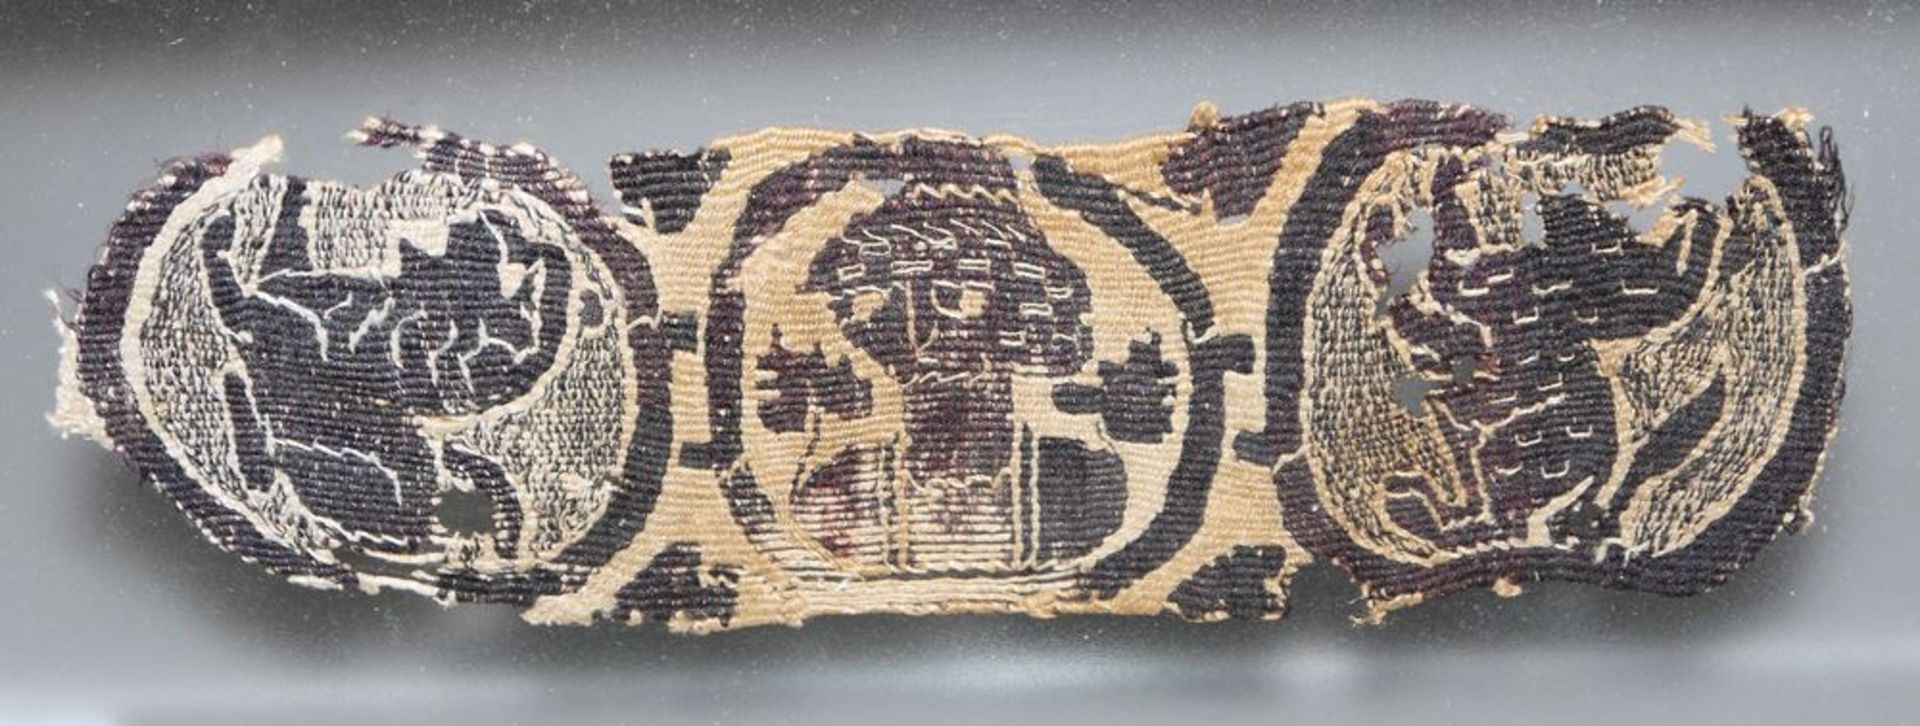 Koptisches Textilfragment, Ägypten 5.-7. Jh. n. Ch.